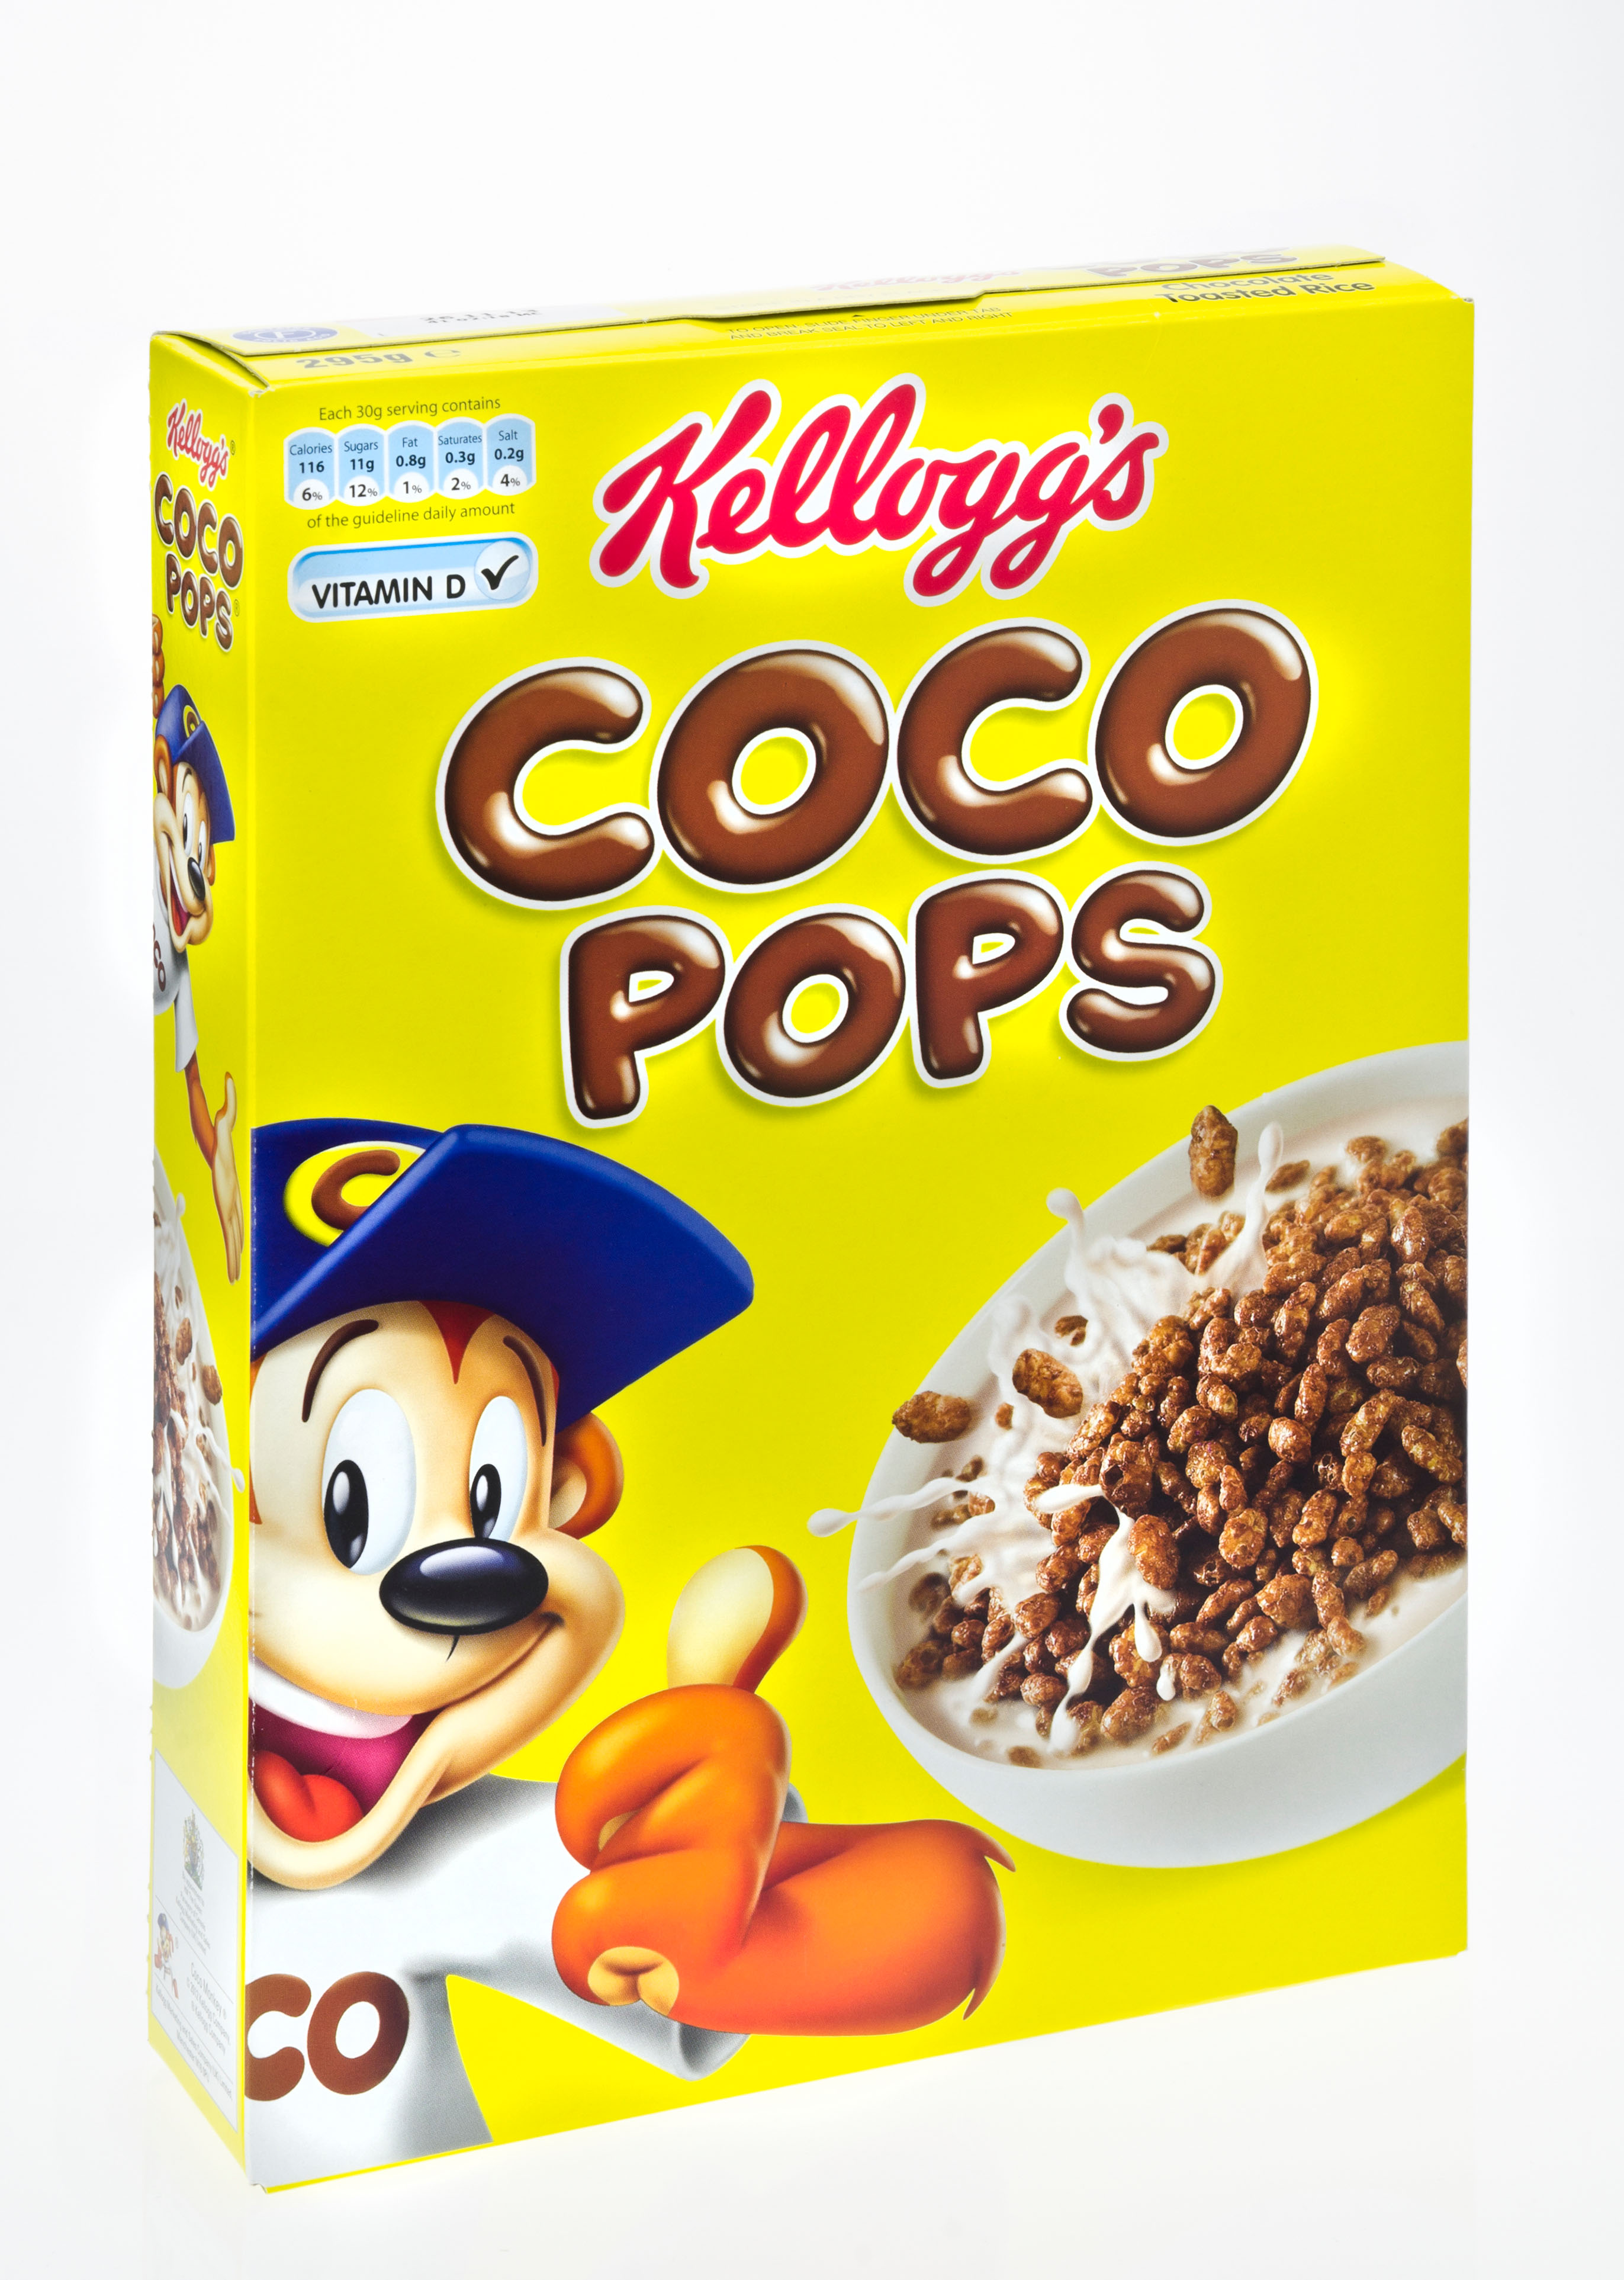 Bei zuckerhaltigen Cerealien wie Coco Pops sollte man jedoch noch vorsichtiger sein